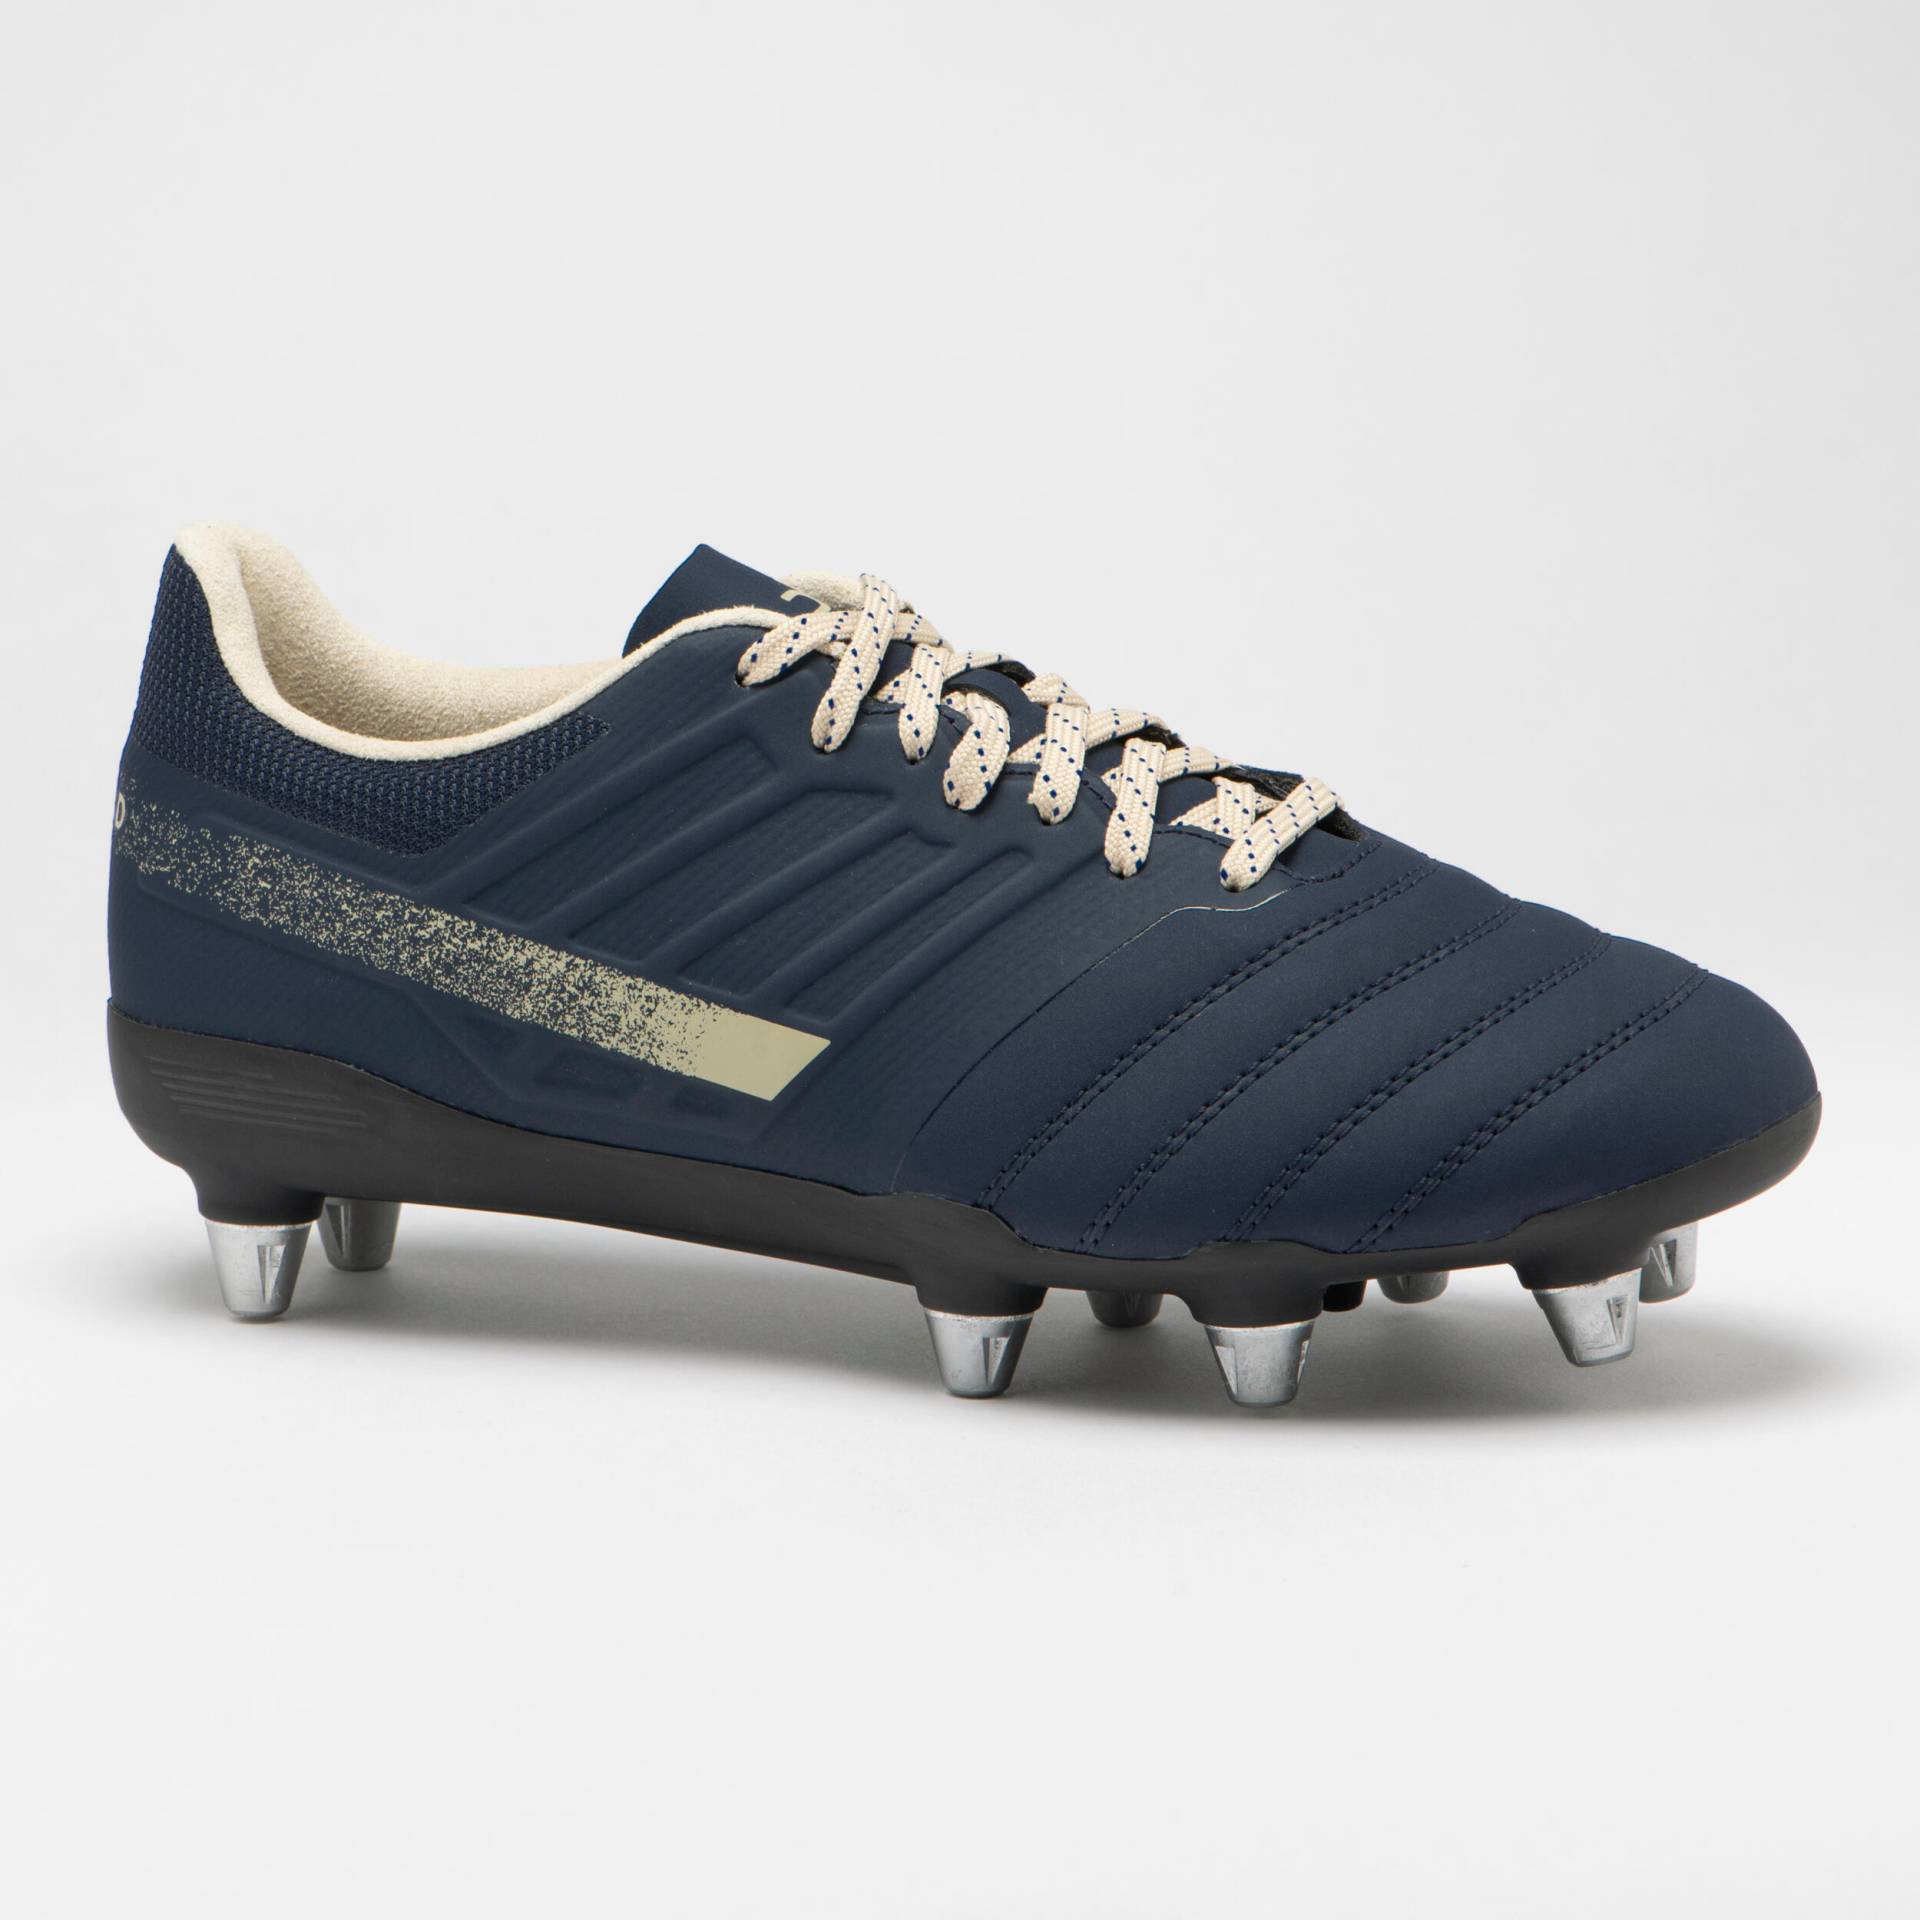 Damen/Herren Rugby Schuhe Schraubstollen SG - Impact R500 marineblau/beige von OFFLOAD